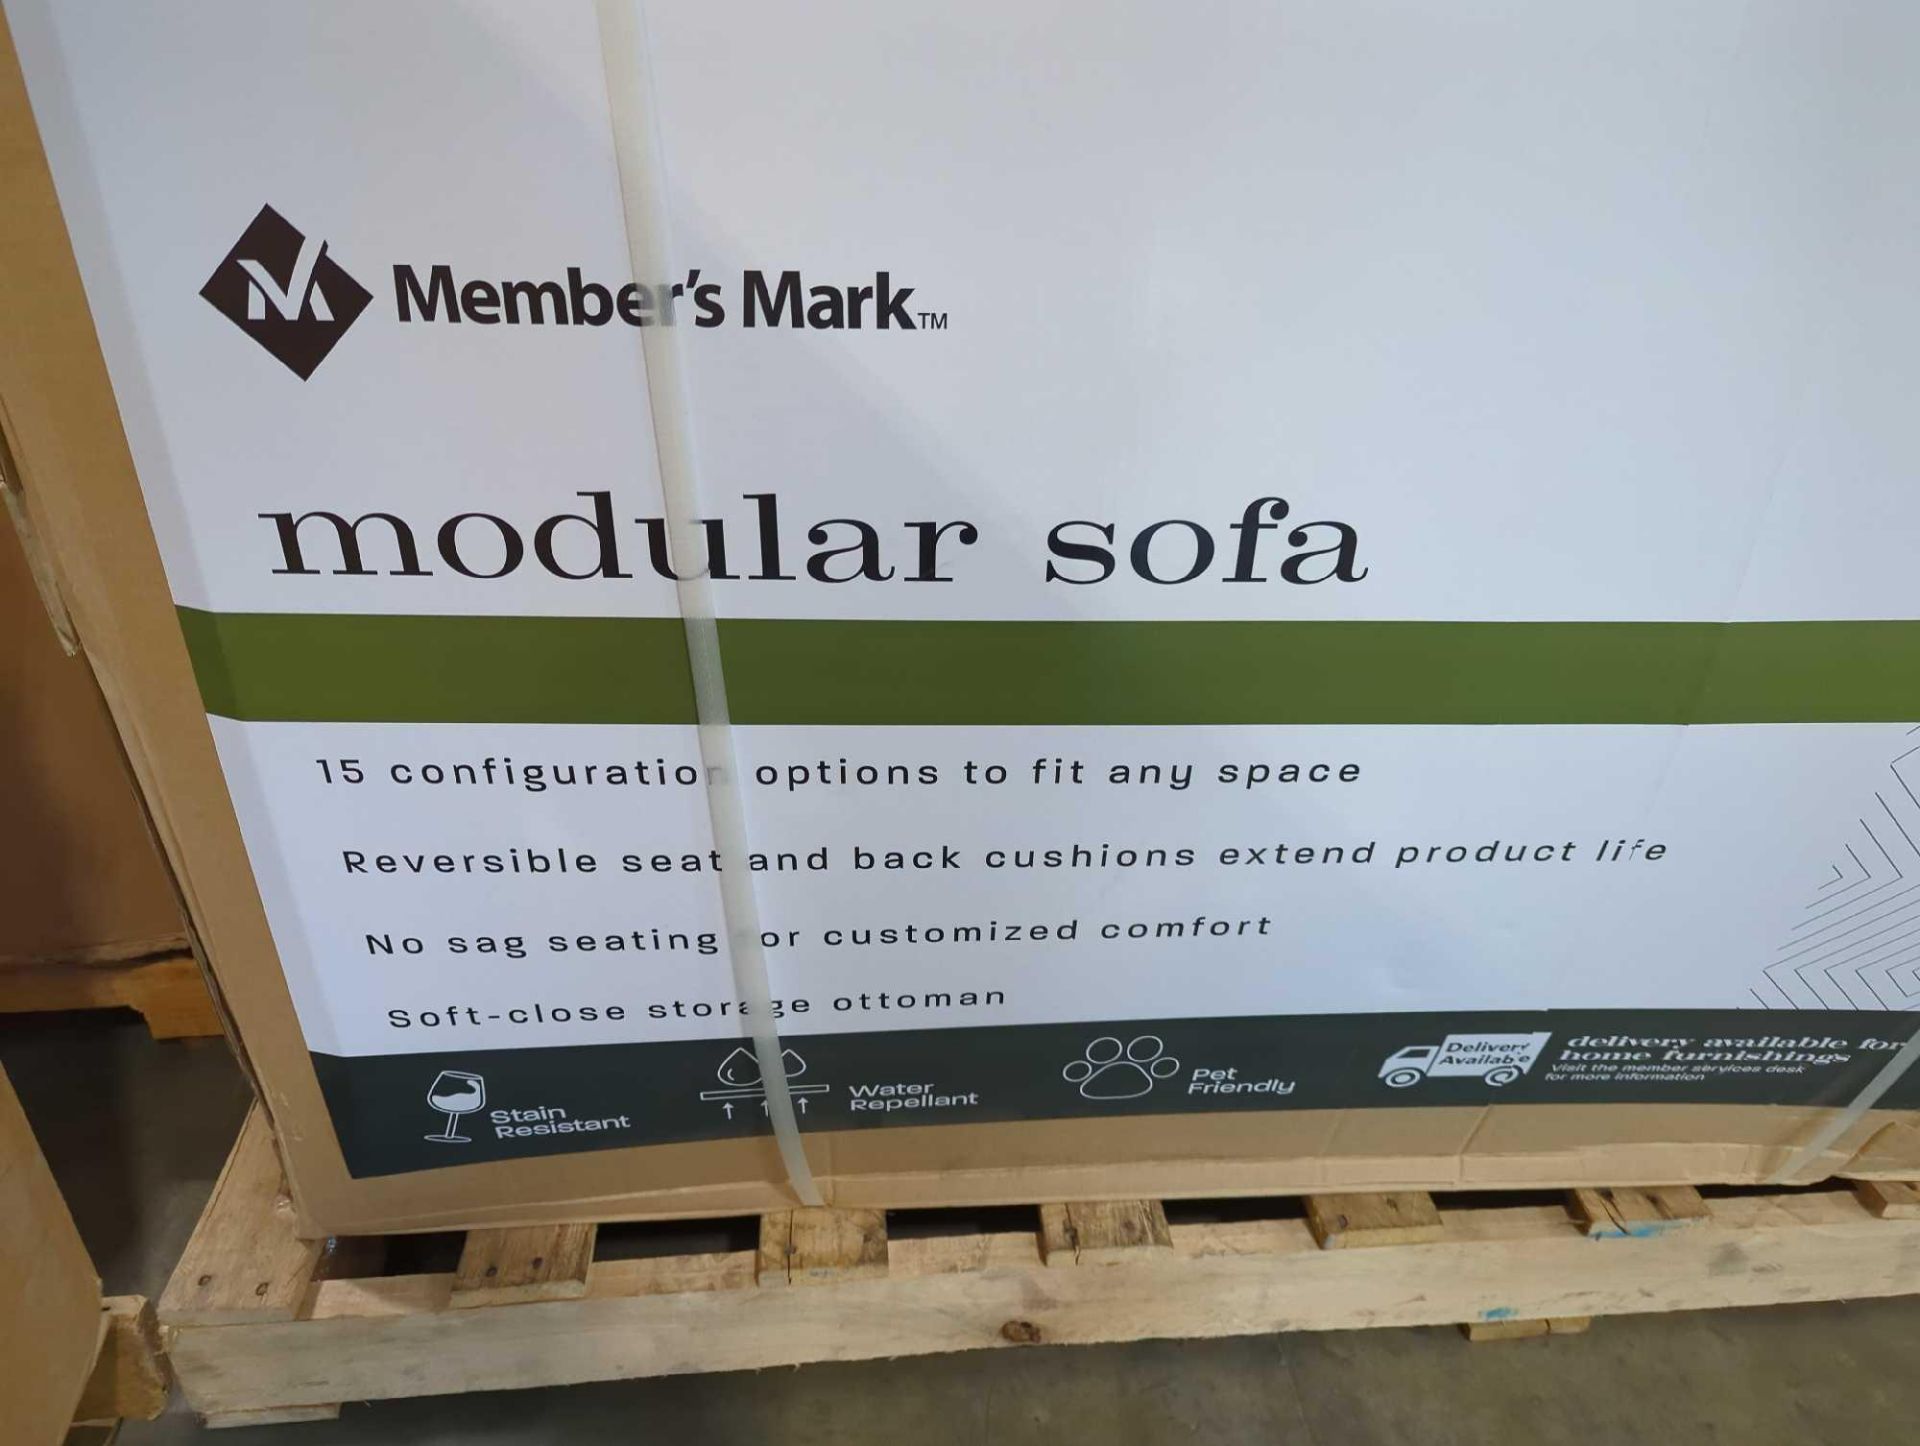 members mark modular sofa - Image 2 of 6